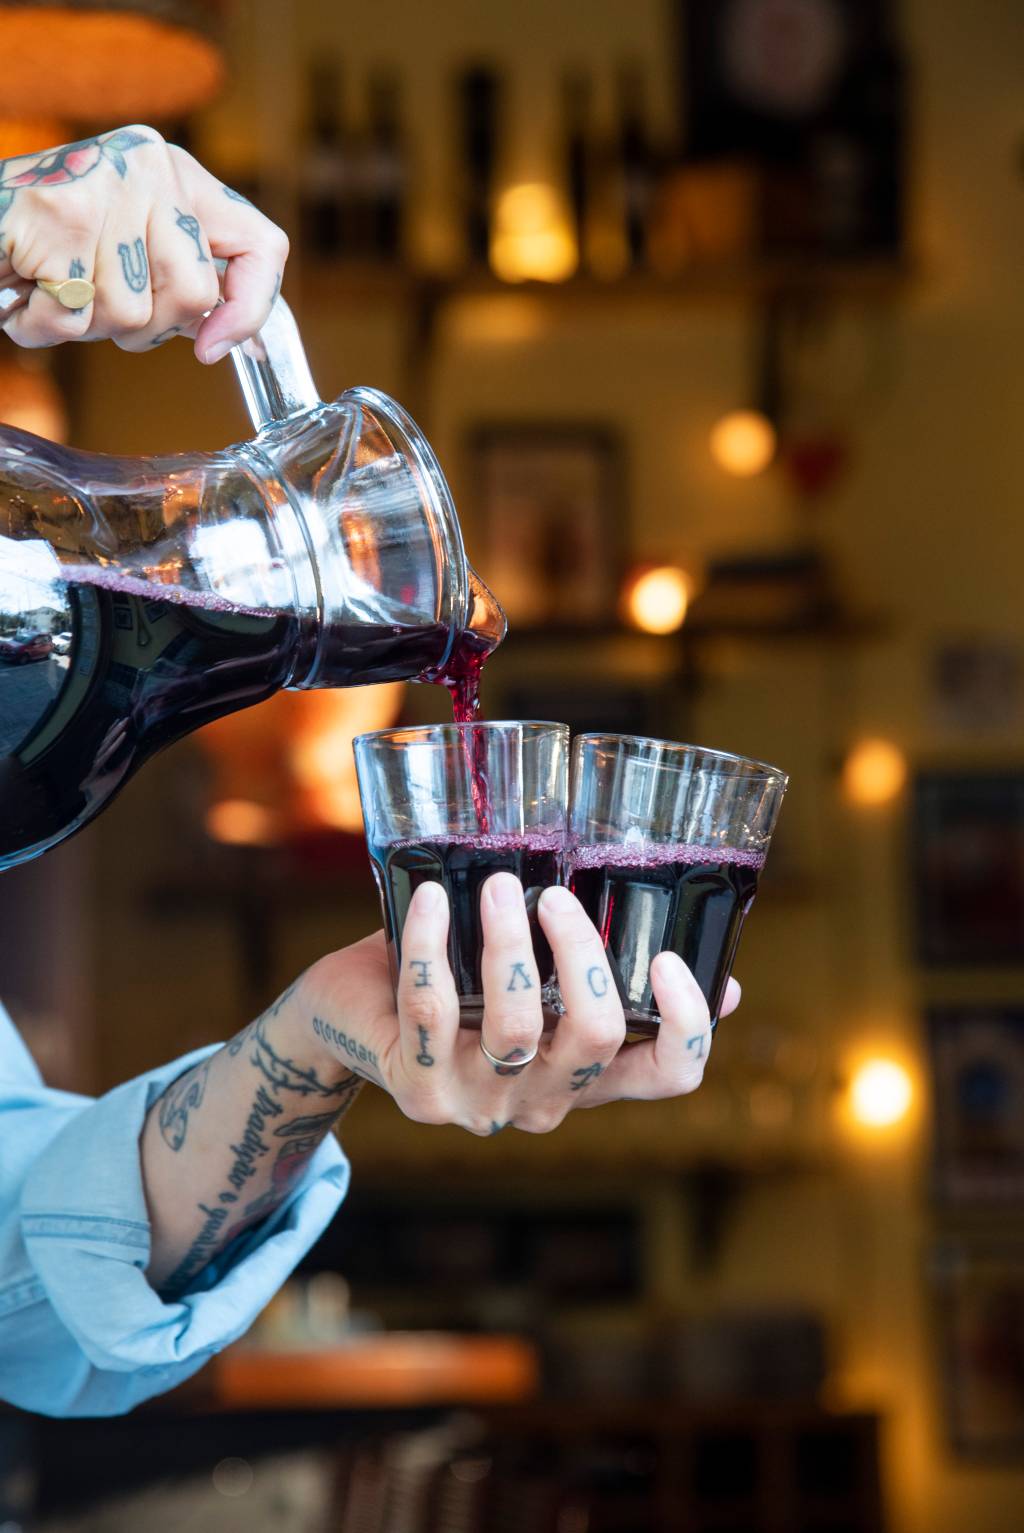 Ao centro, mão tatuada segurando dois copos de vidro sendo servidos de vinho em jarra à esquerda.